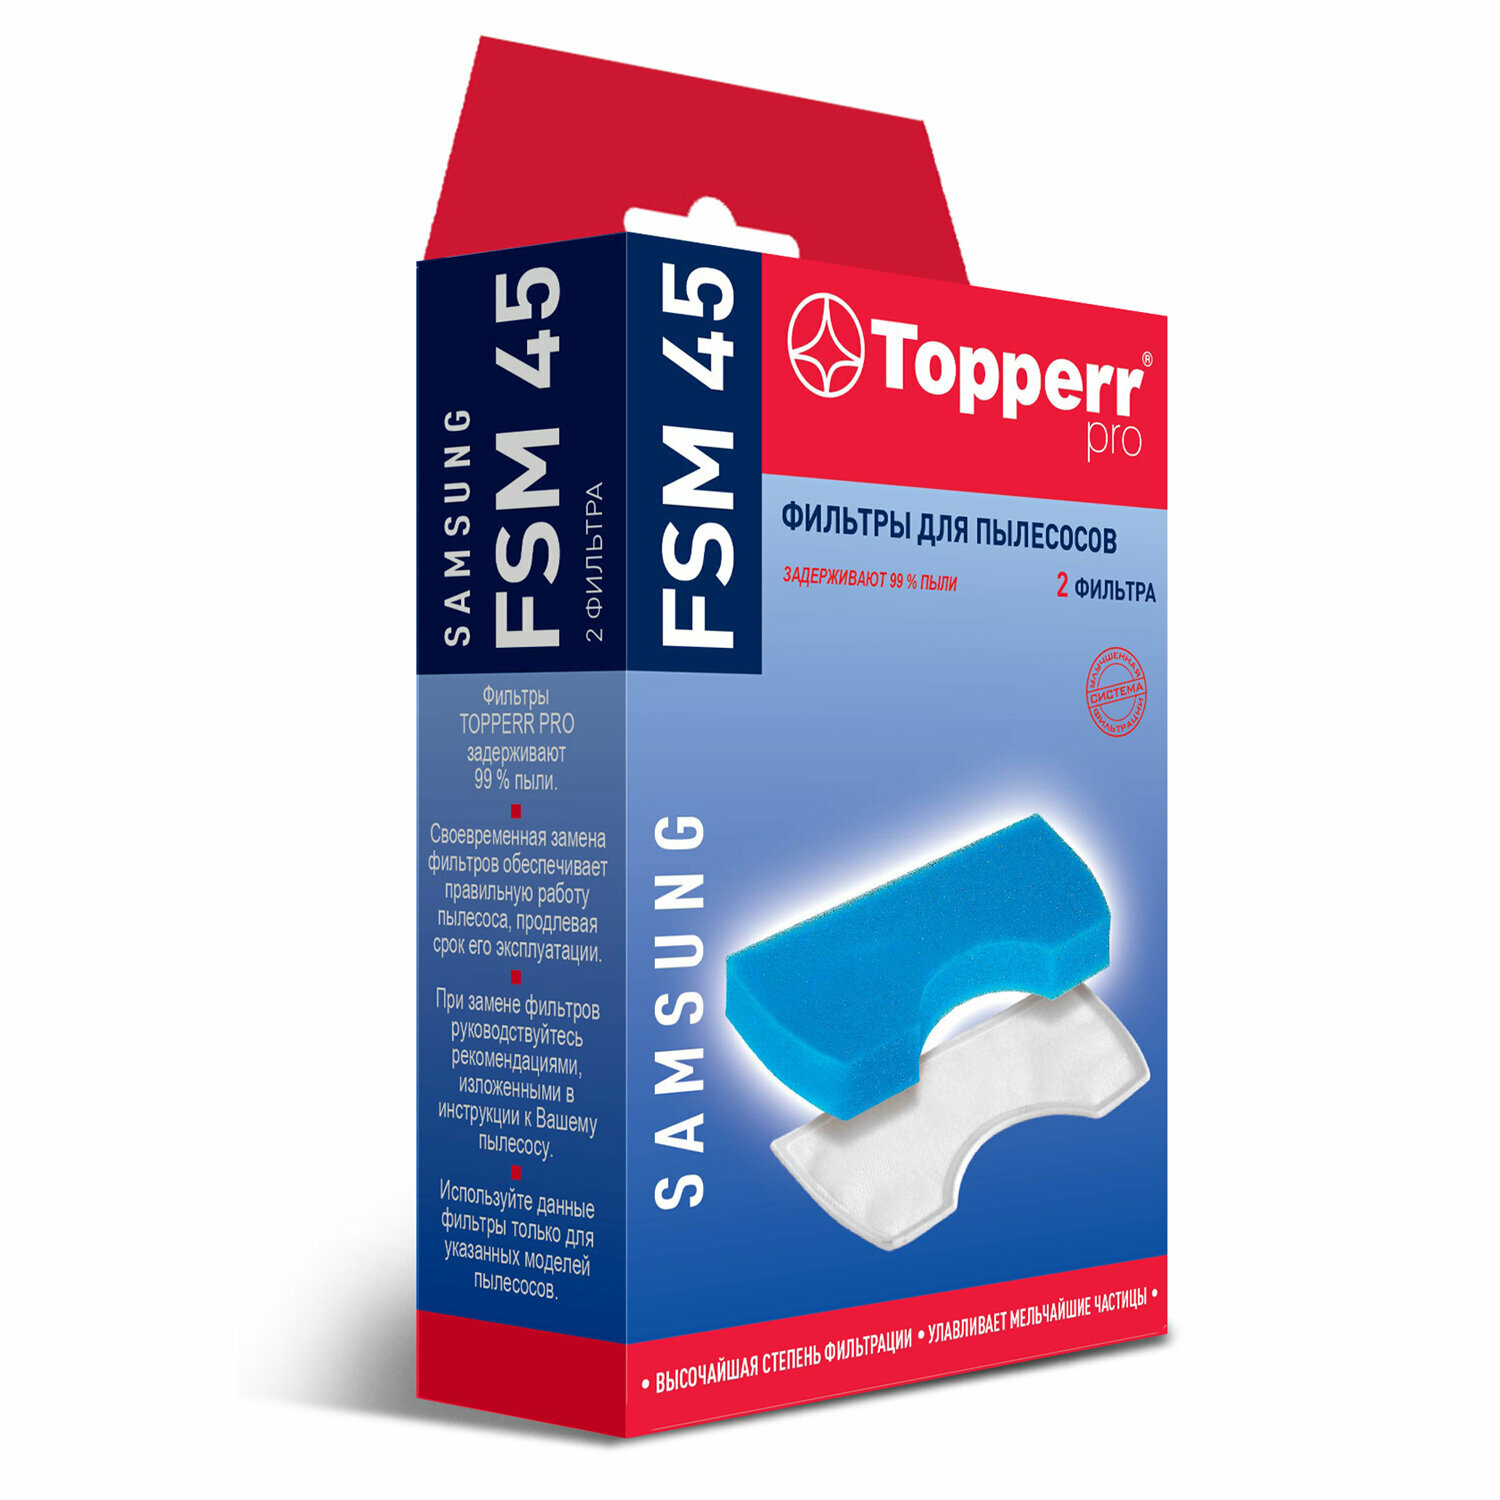 Комплект фильтров TOPPERR FSM 45 для пылесосов SAMSUNG 1111 /Квант продажи 1 ед./